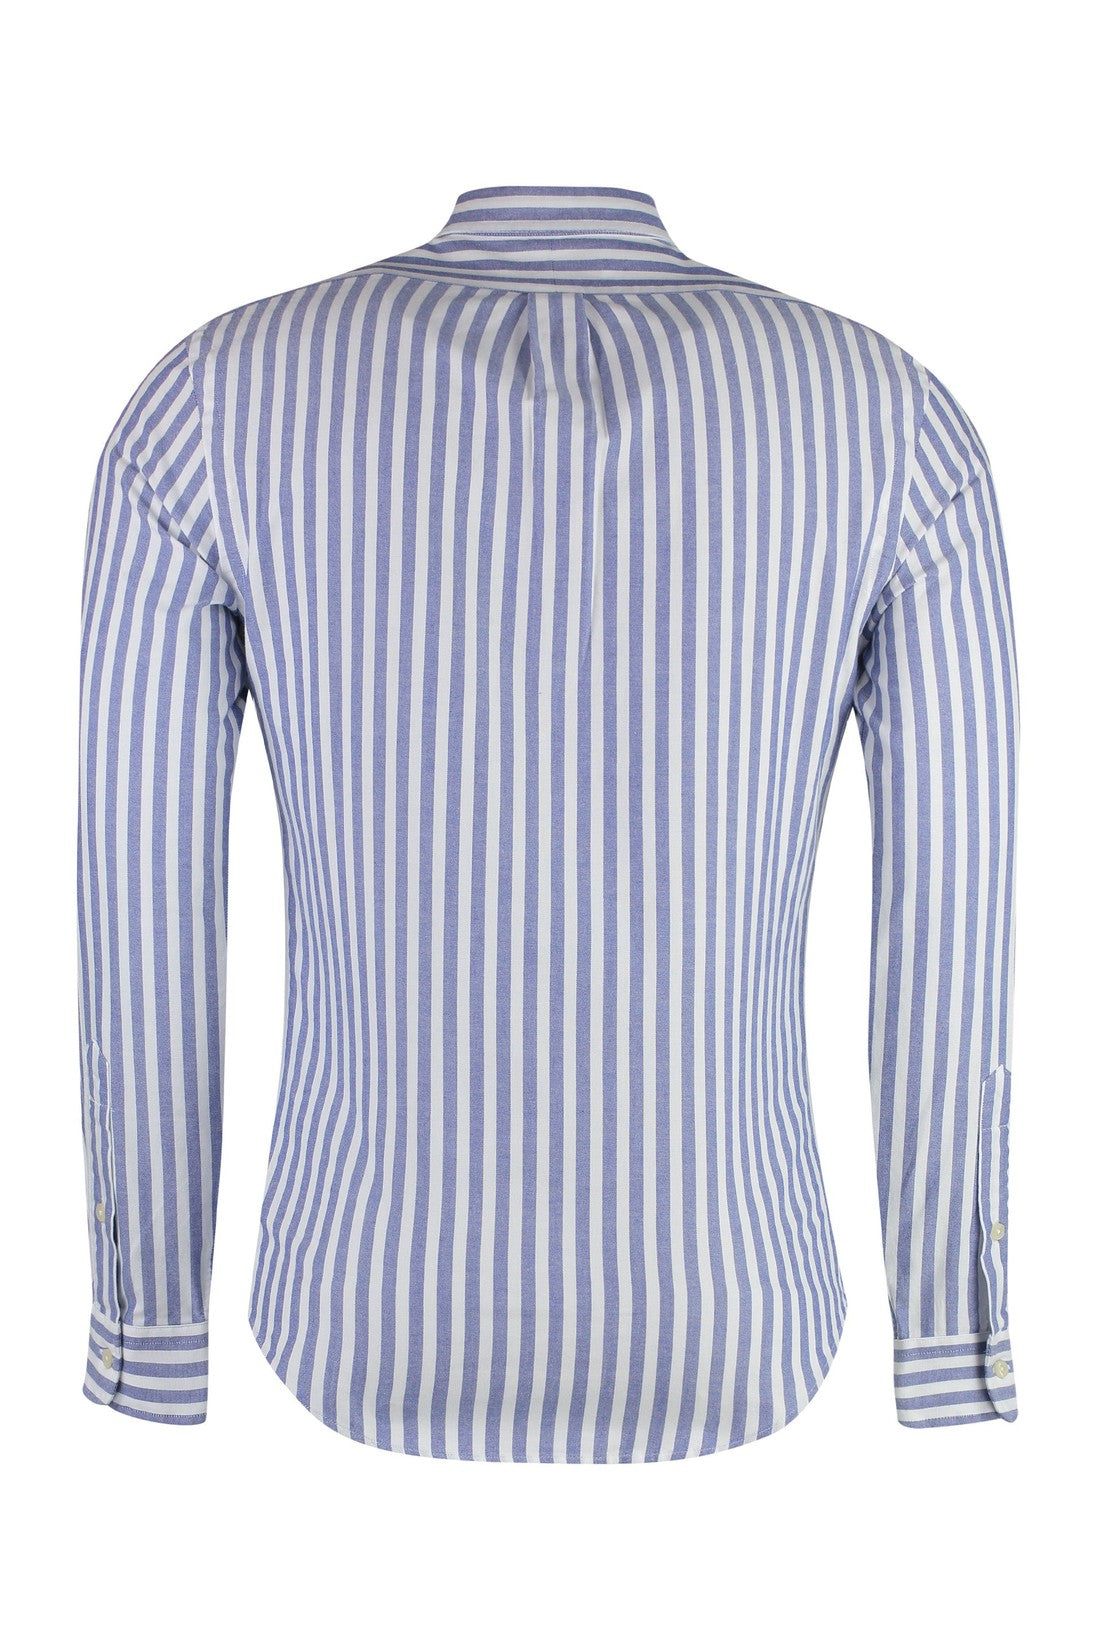 Polo Ralph Lauren-OUTLET-SALE-Striped cotton shirt-ARCHIVIST